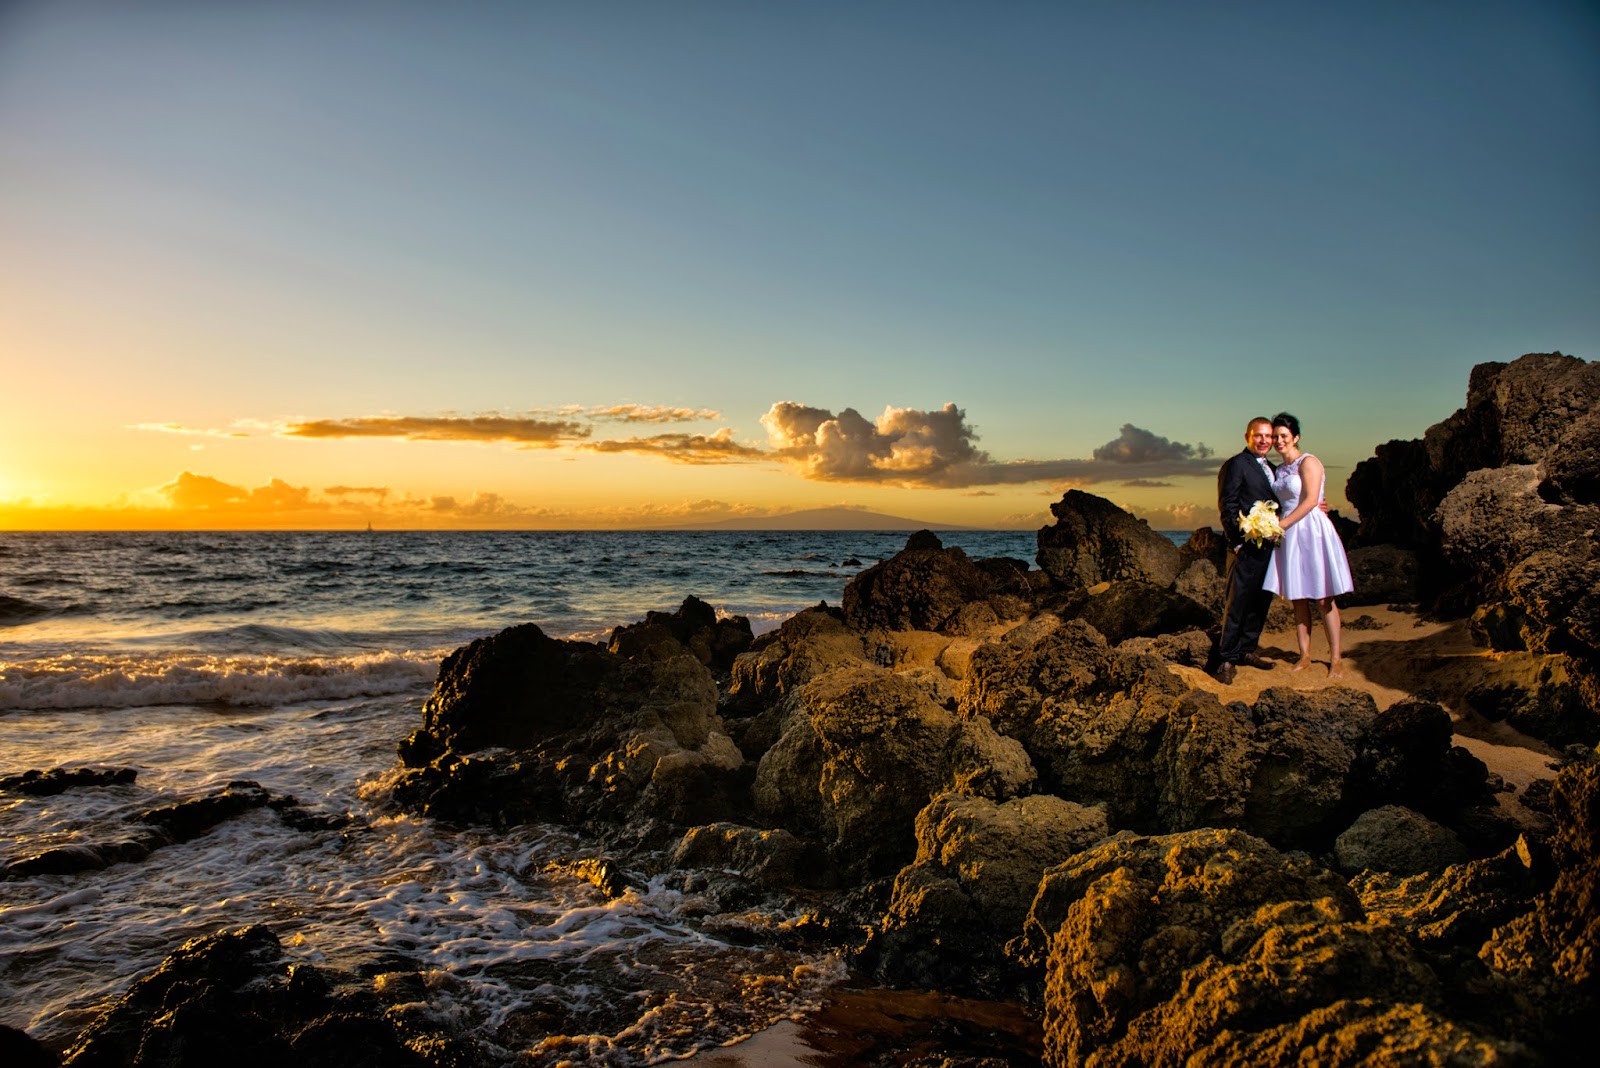 Maui Wedding Photography, Maui Wedding Photographers, Maui Wedding planners, Maui Weddings